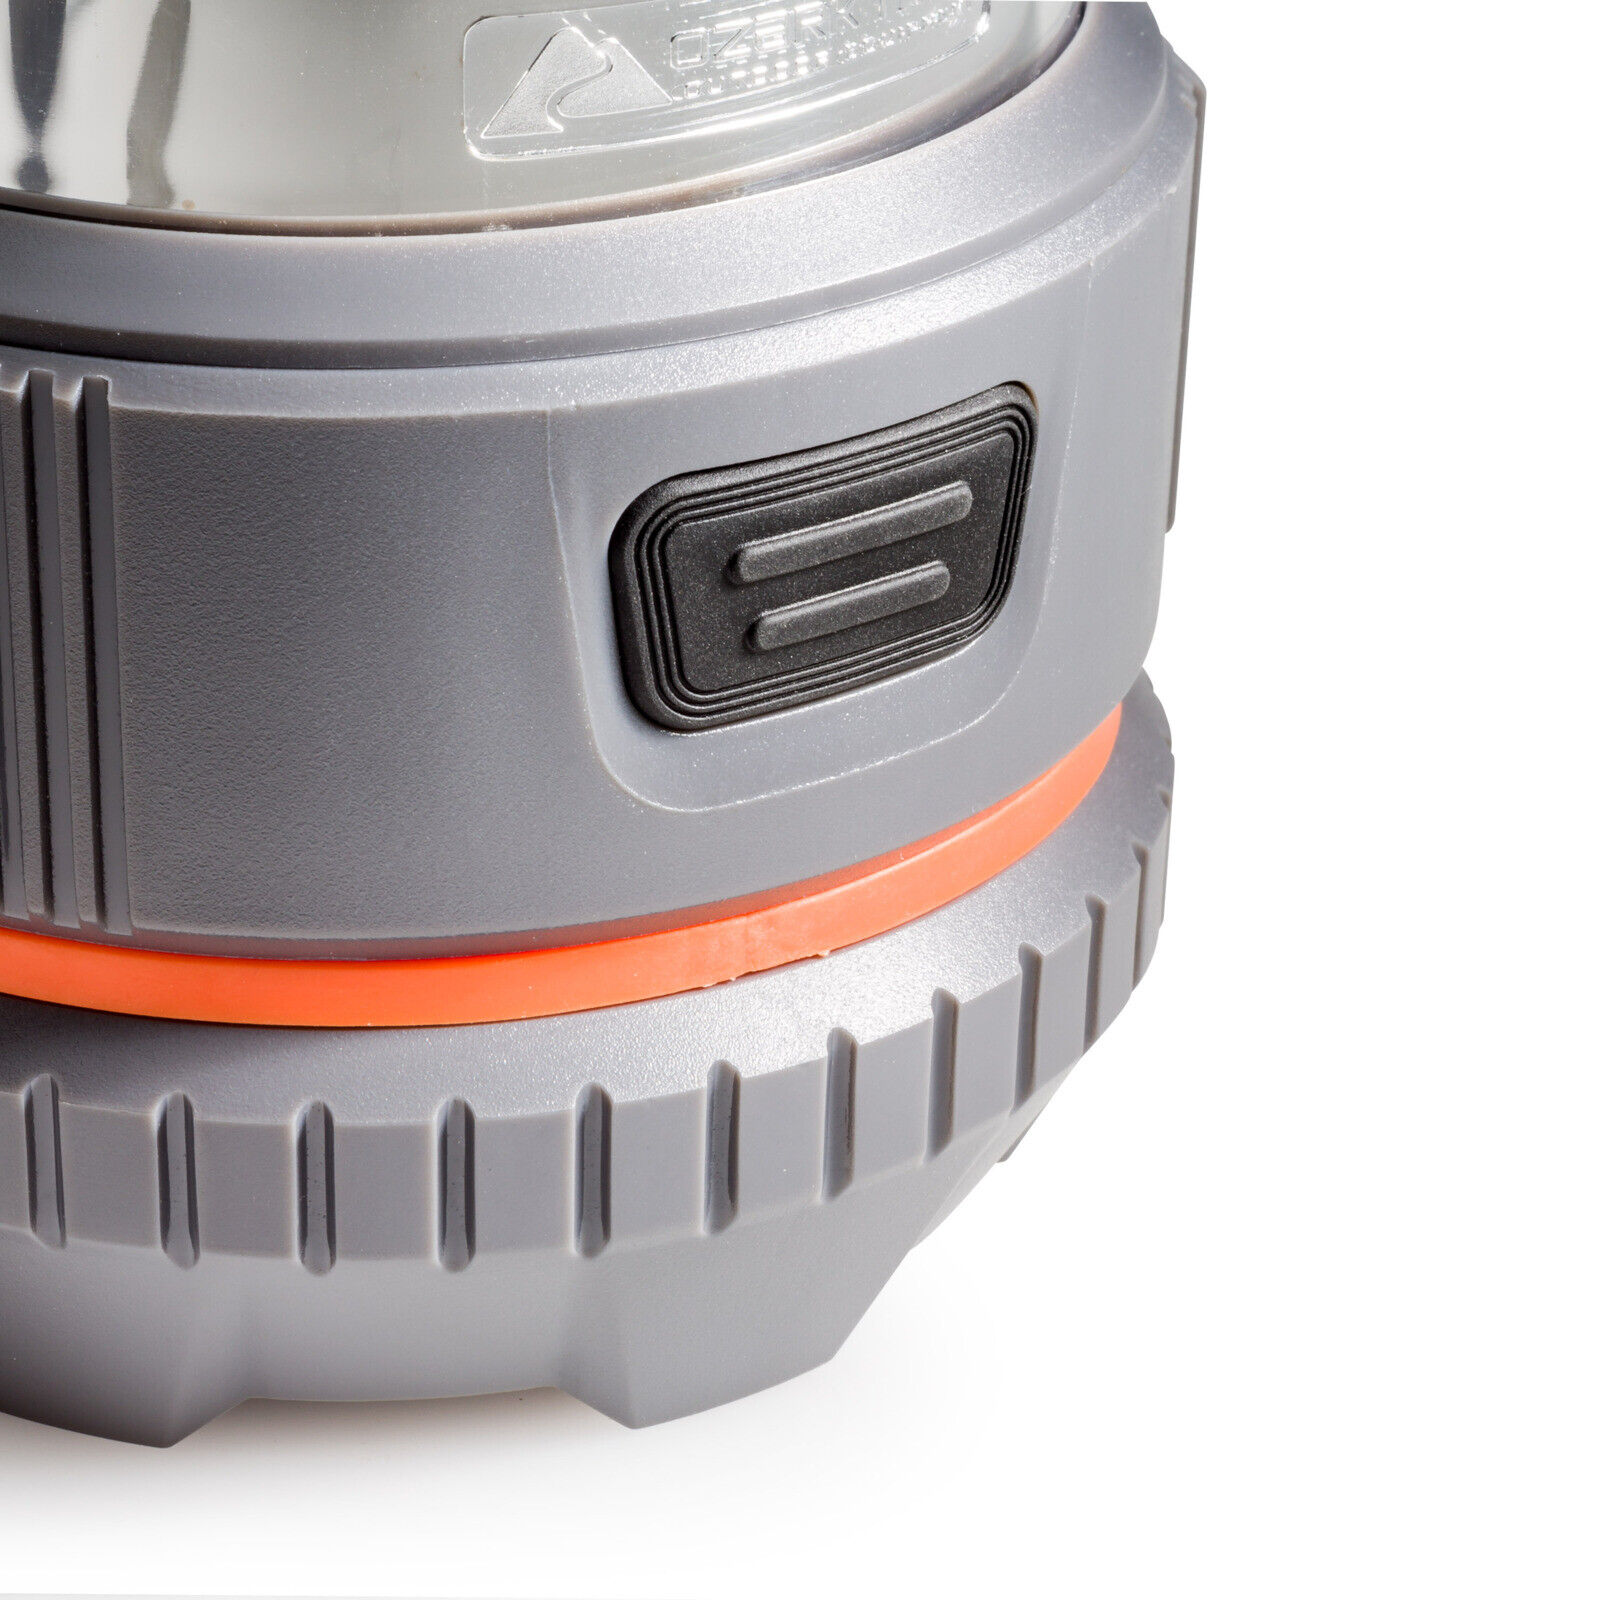 Northwest LED Lantern/Flashlight Multi-tool Combo